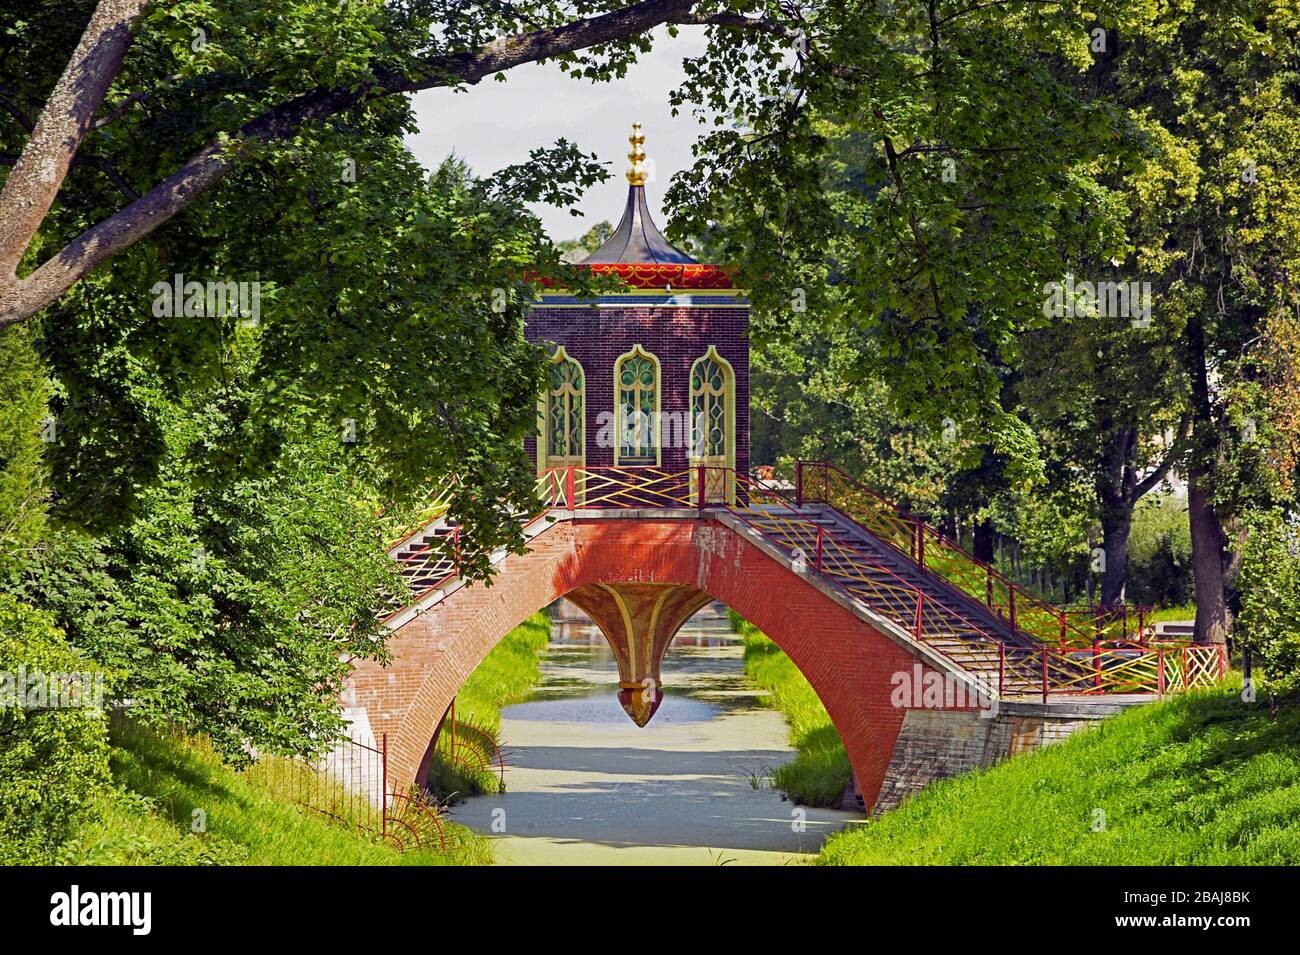 Pont, village chinois dans le Parc du Palais de Catherine, Musée de l'Ermitage (Palais d'hiver), Tsarskoye Selo (Pouchkine), au sud de Saint-Petersb Banque D'Images